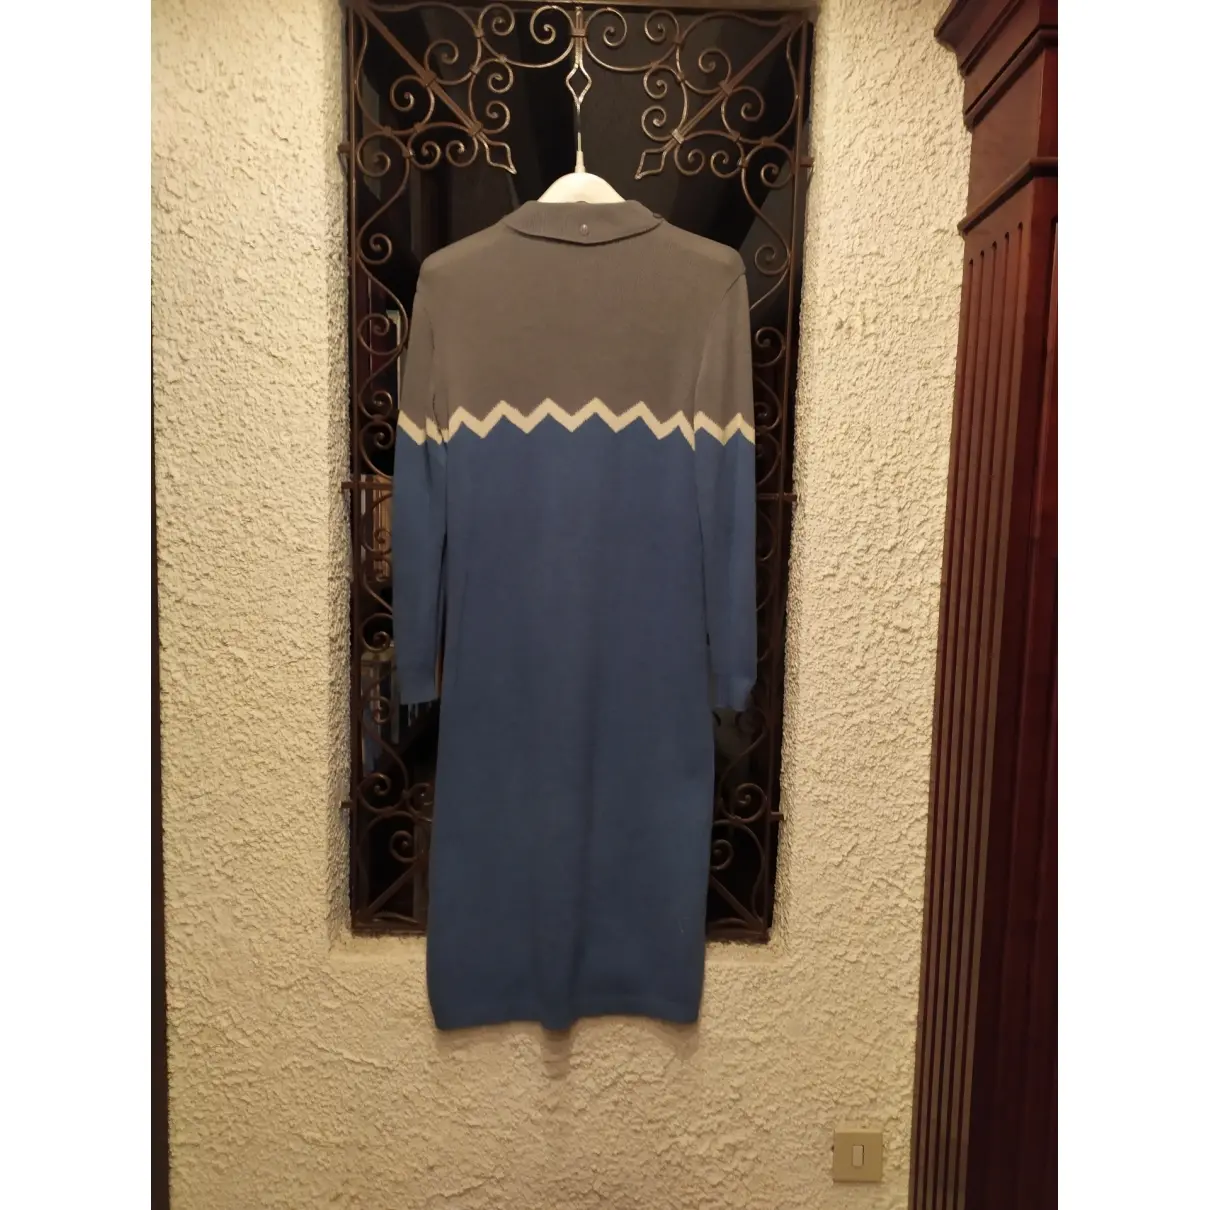 JC De Castelbajac Wool mid-length dress for sale